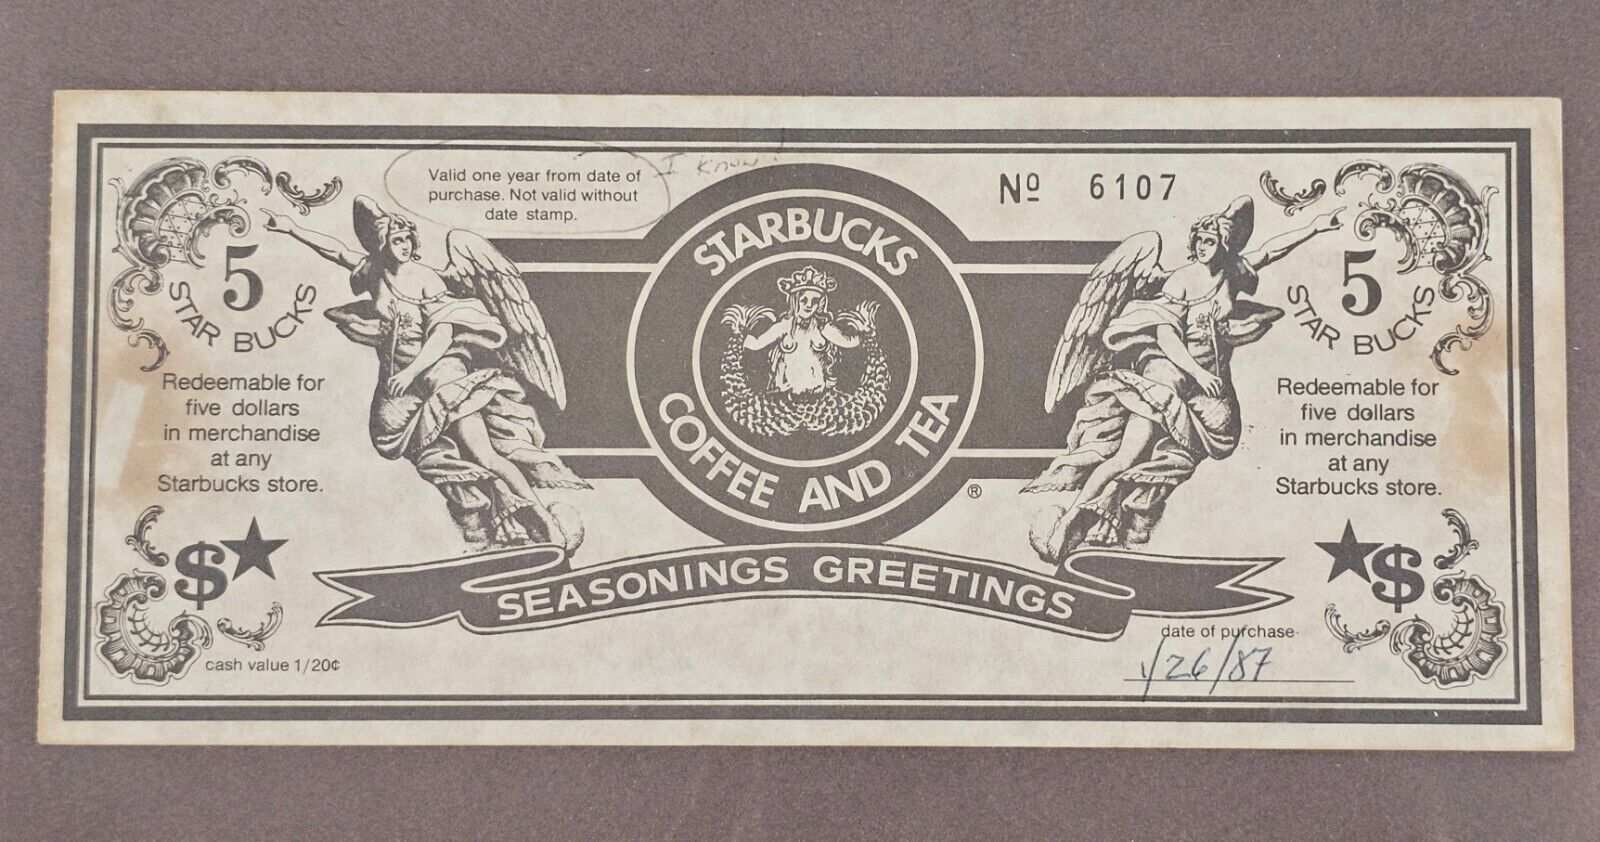 Vintage STARBUCKS voucher from 1987